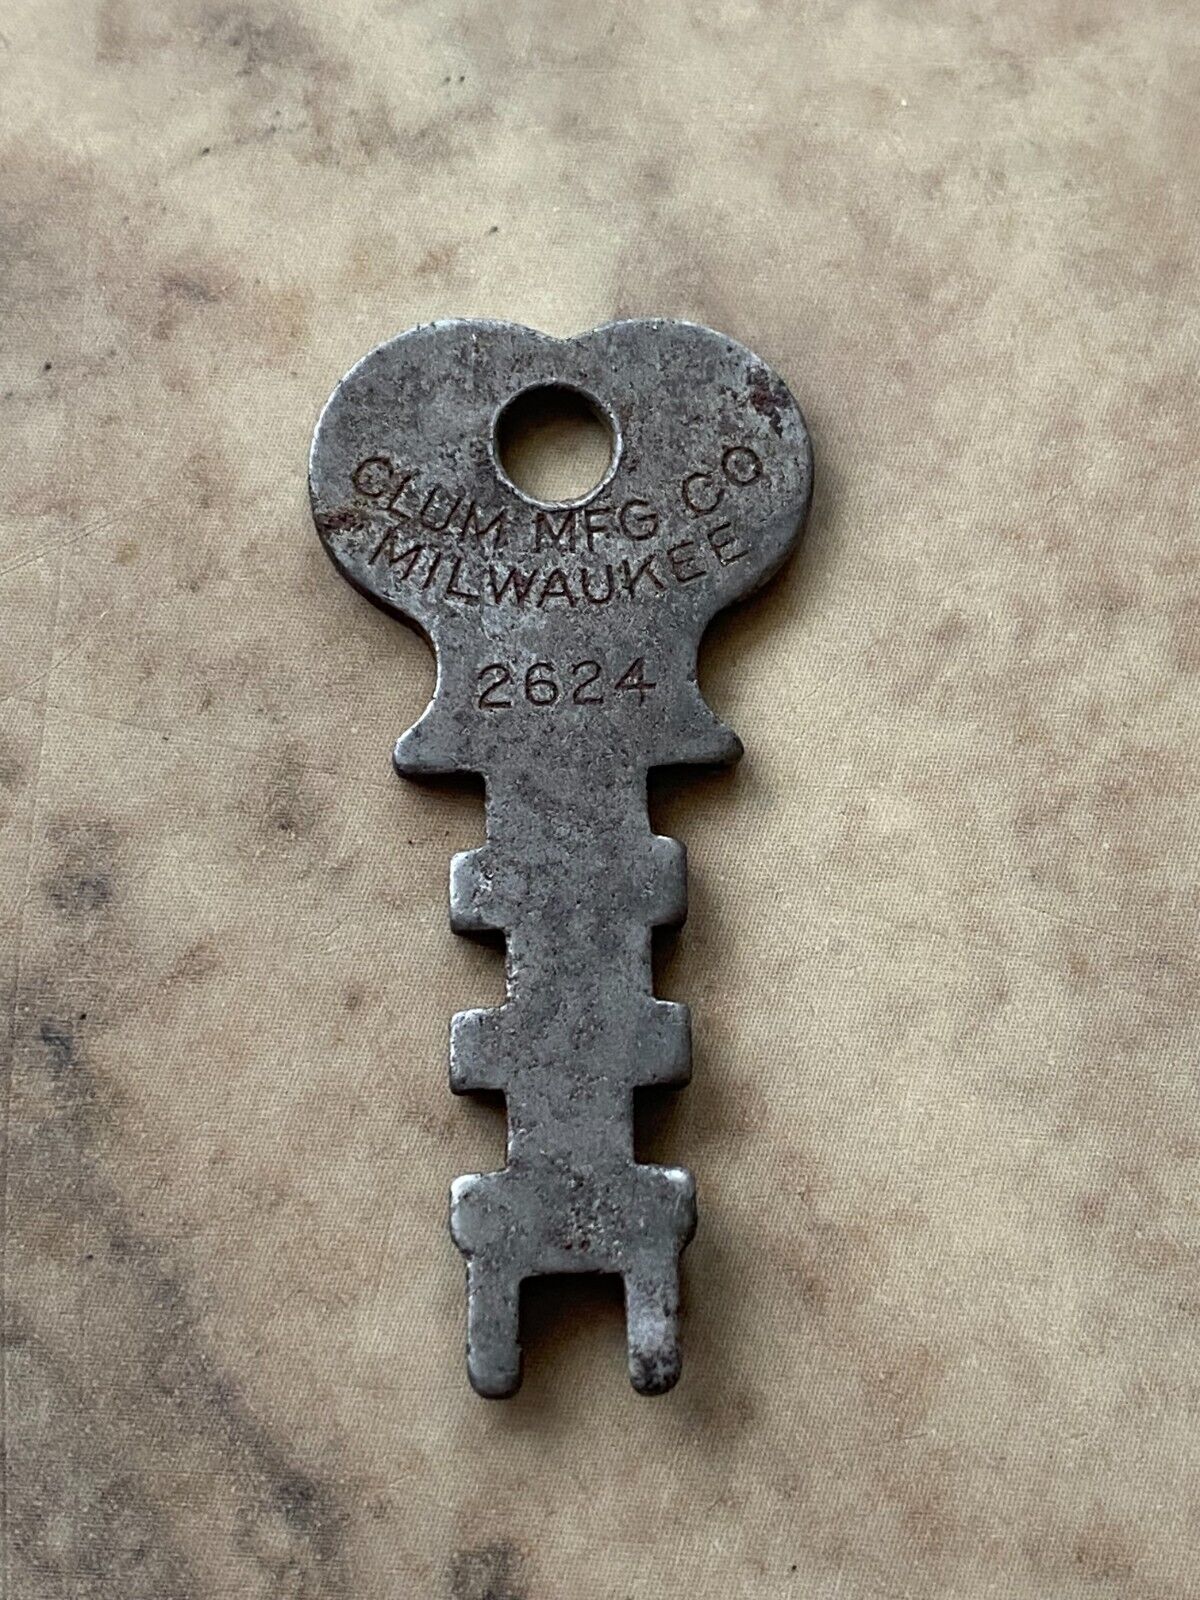 Vintage Key CLUM Mfg Co Flat Ignition Key #2624 Milwaukee